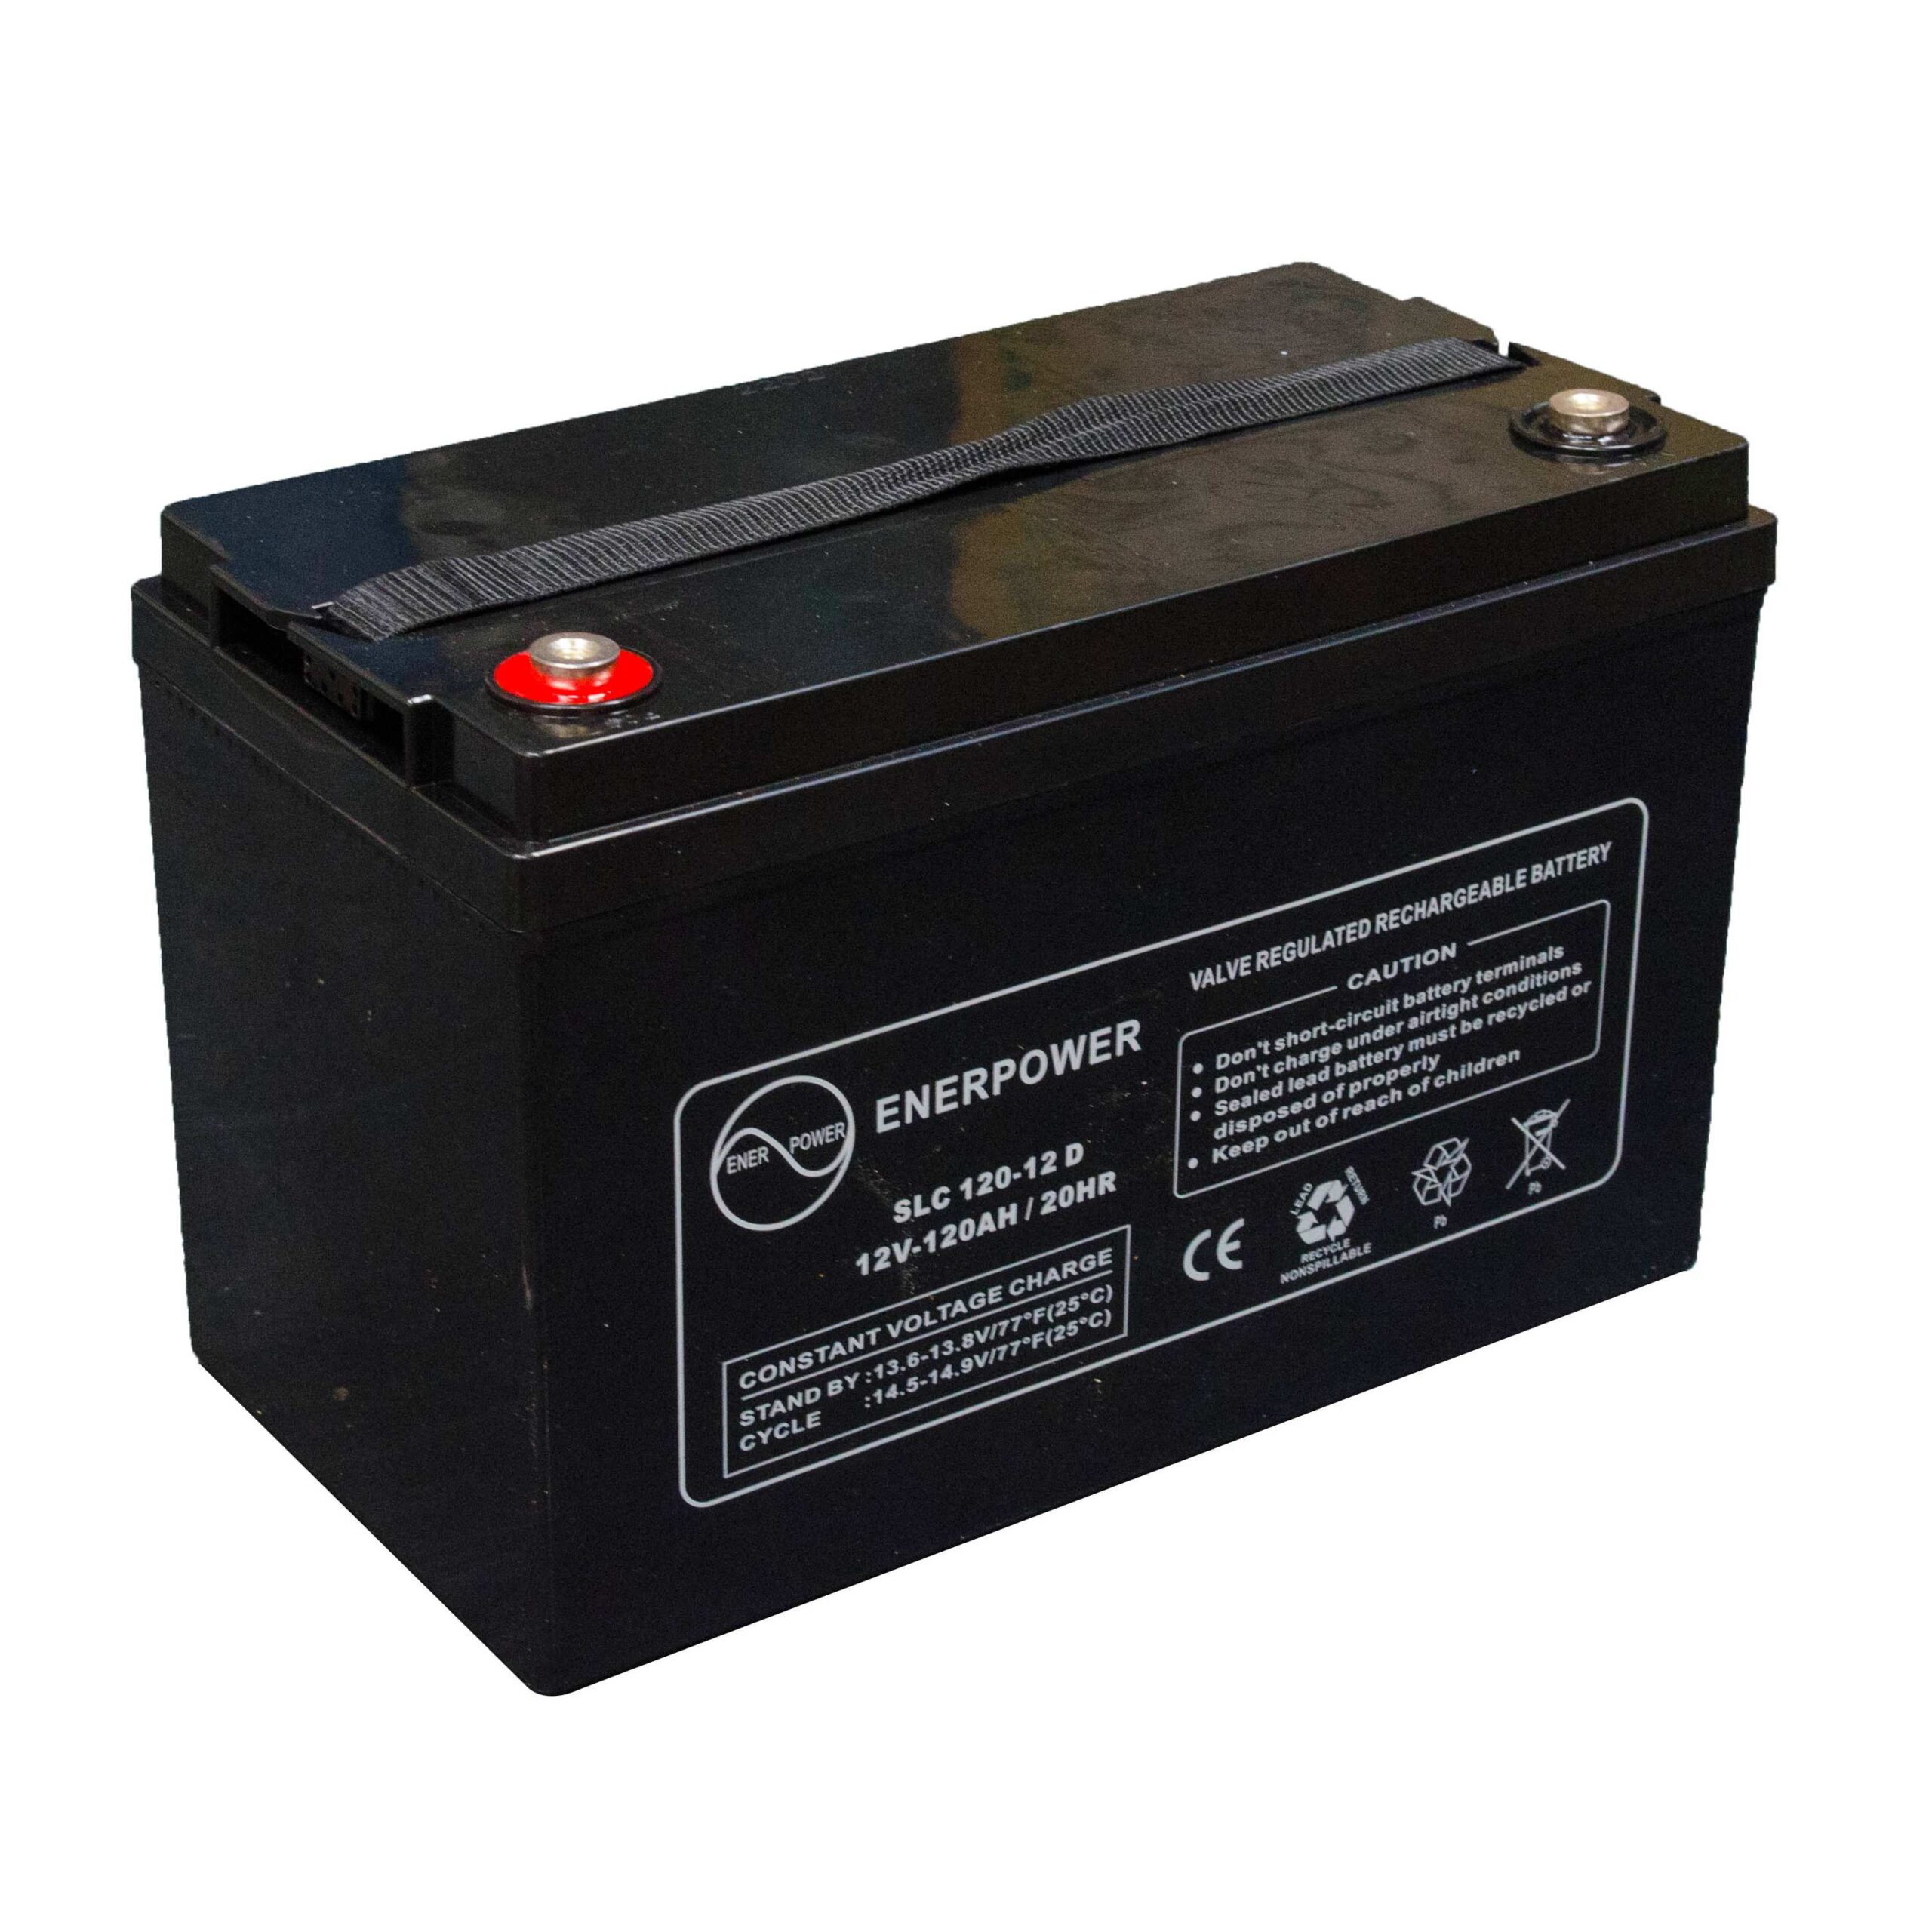 Batterie SLC 120-12 12V 120Ah AGM ENERPOWER